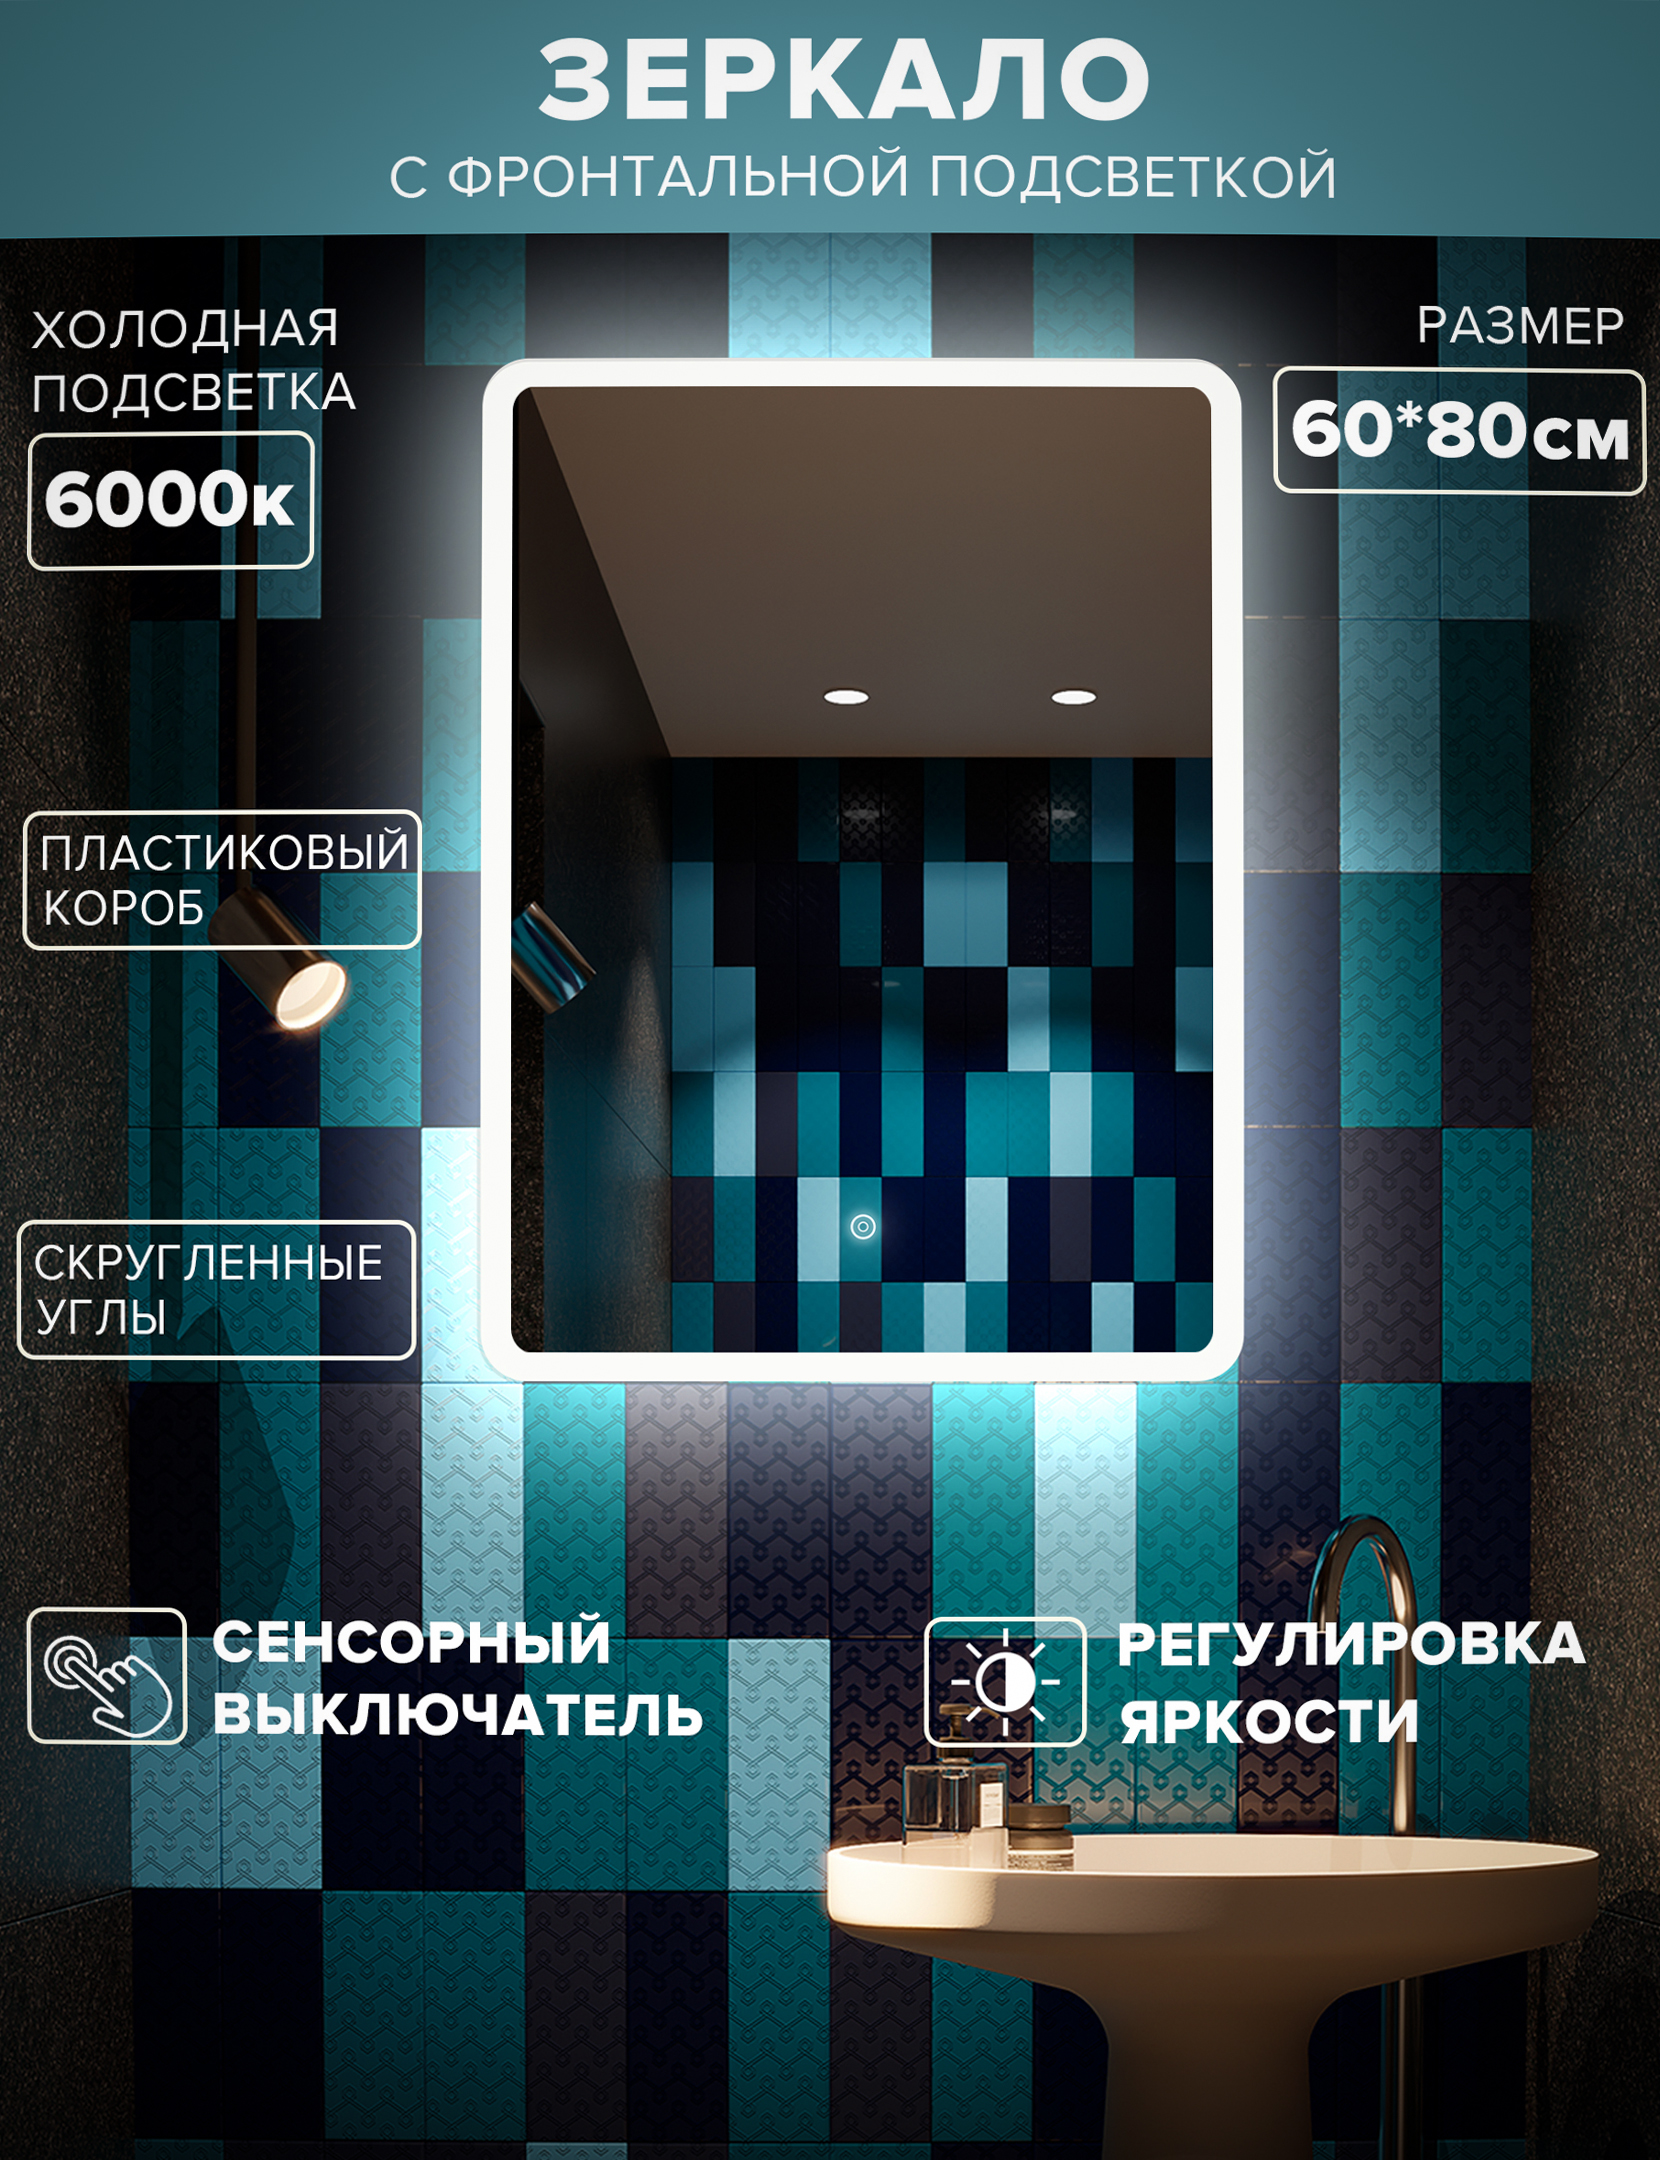 Зеркало для ванной Alfa Mirrors MDi-68h холодная подсветка 6000К,скругленные углы 60*80см